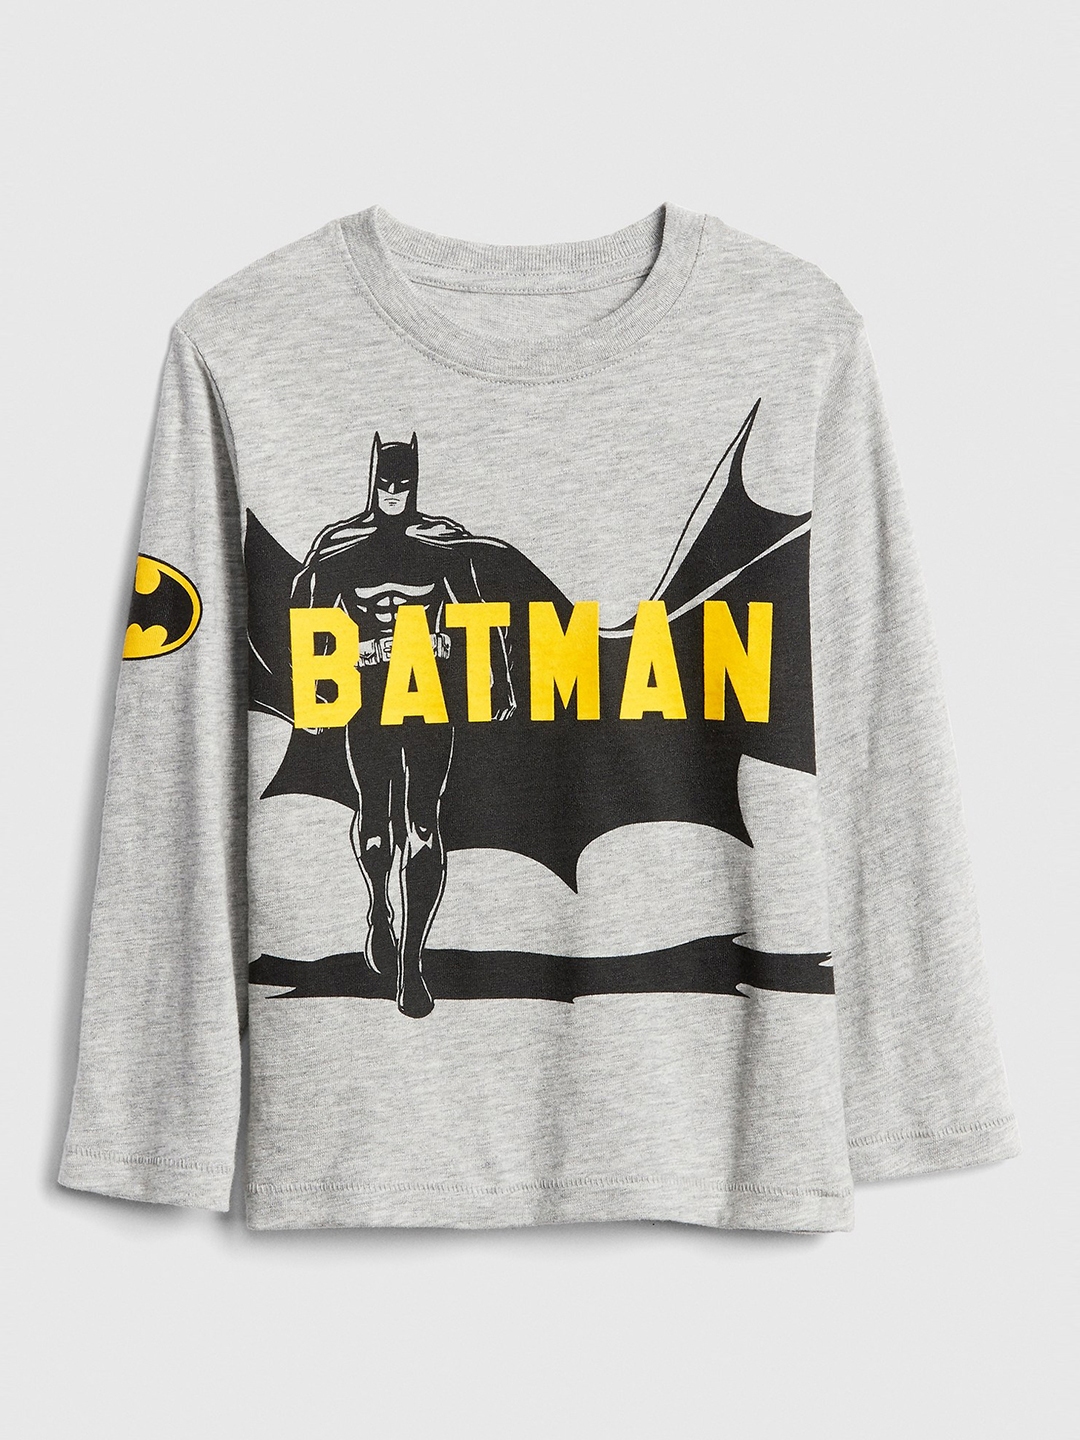 gap batman shirt